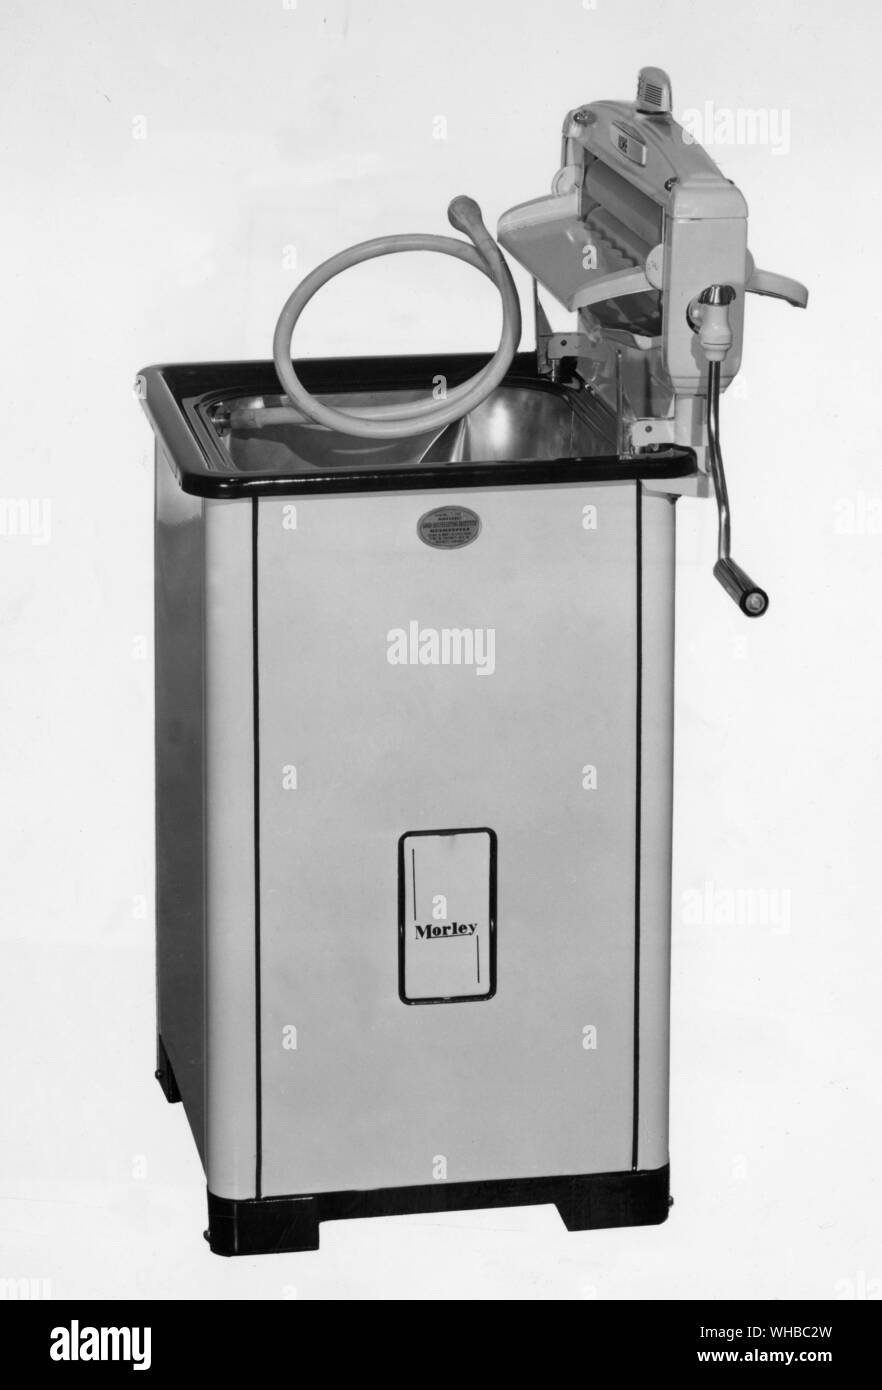 Morley - Gas/elektrisch Waschmaschine. Stockfoto